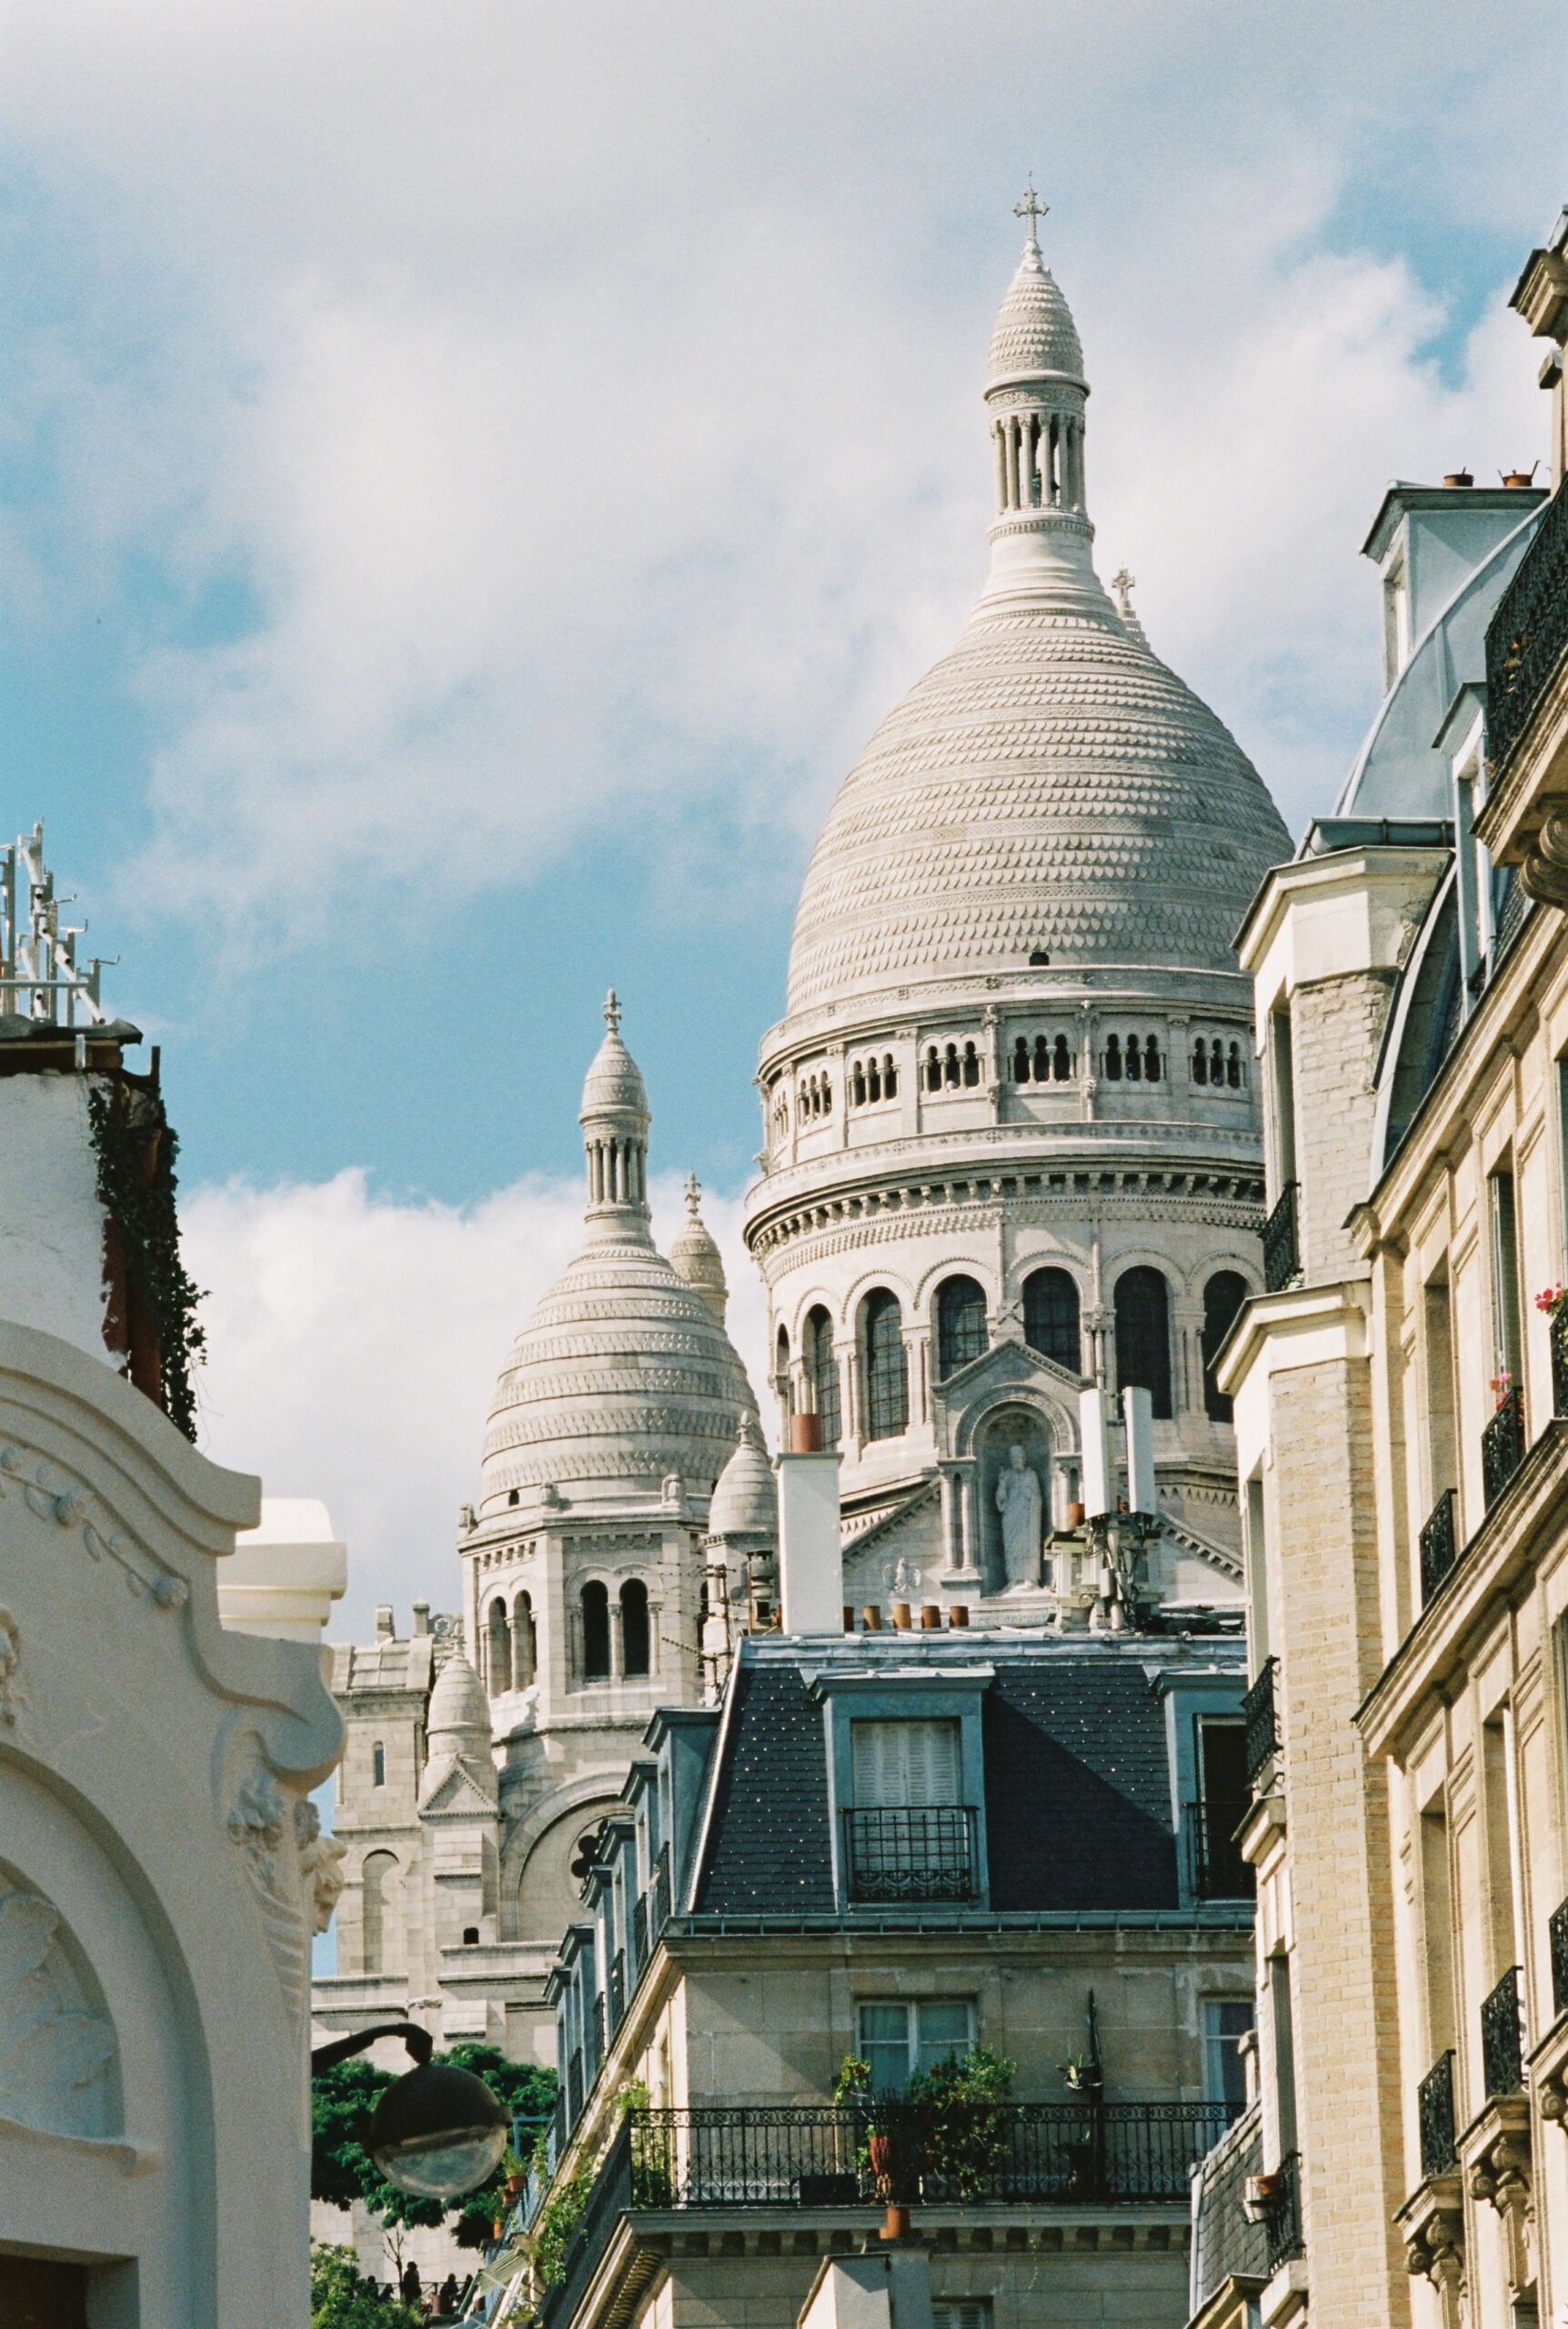 souvenirs de Paris idée cadeau tabliers offir Montmartre ZEZETE by Montmartre